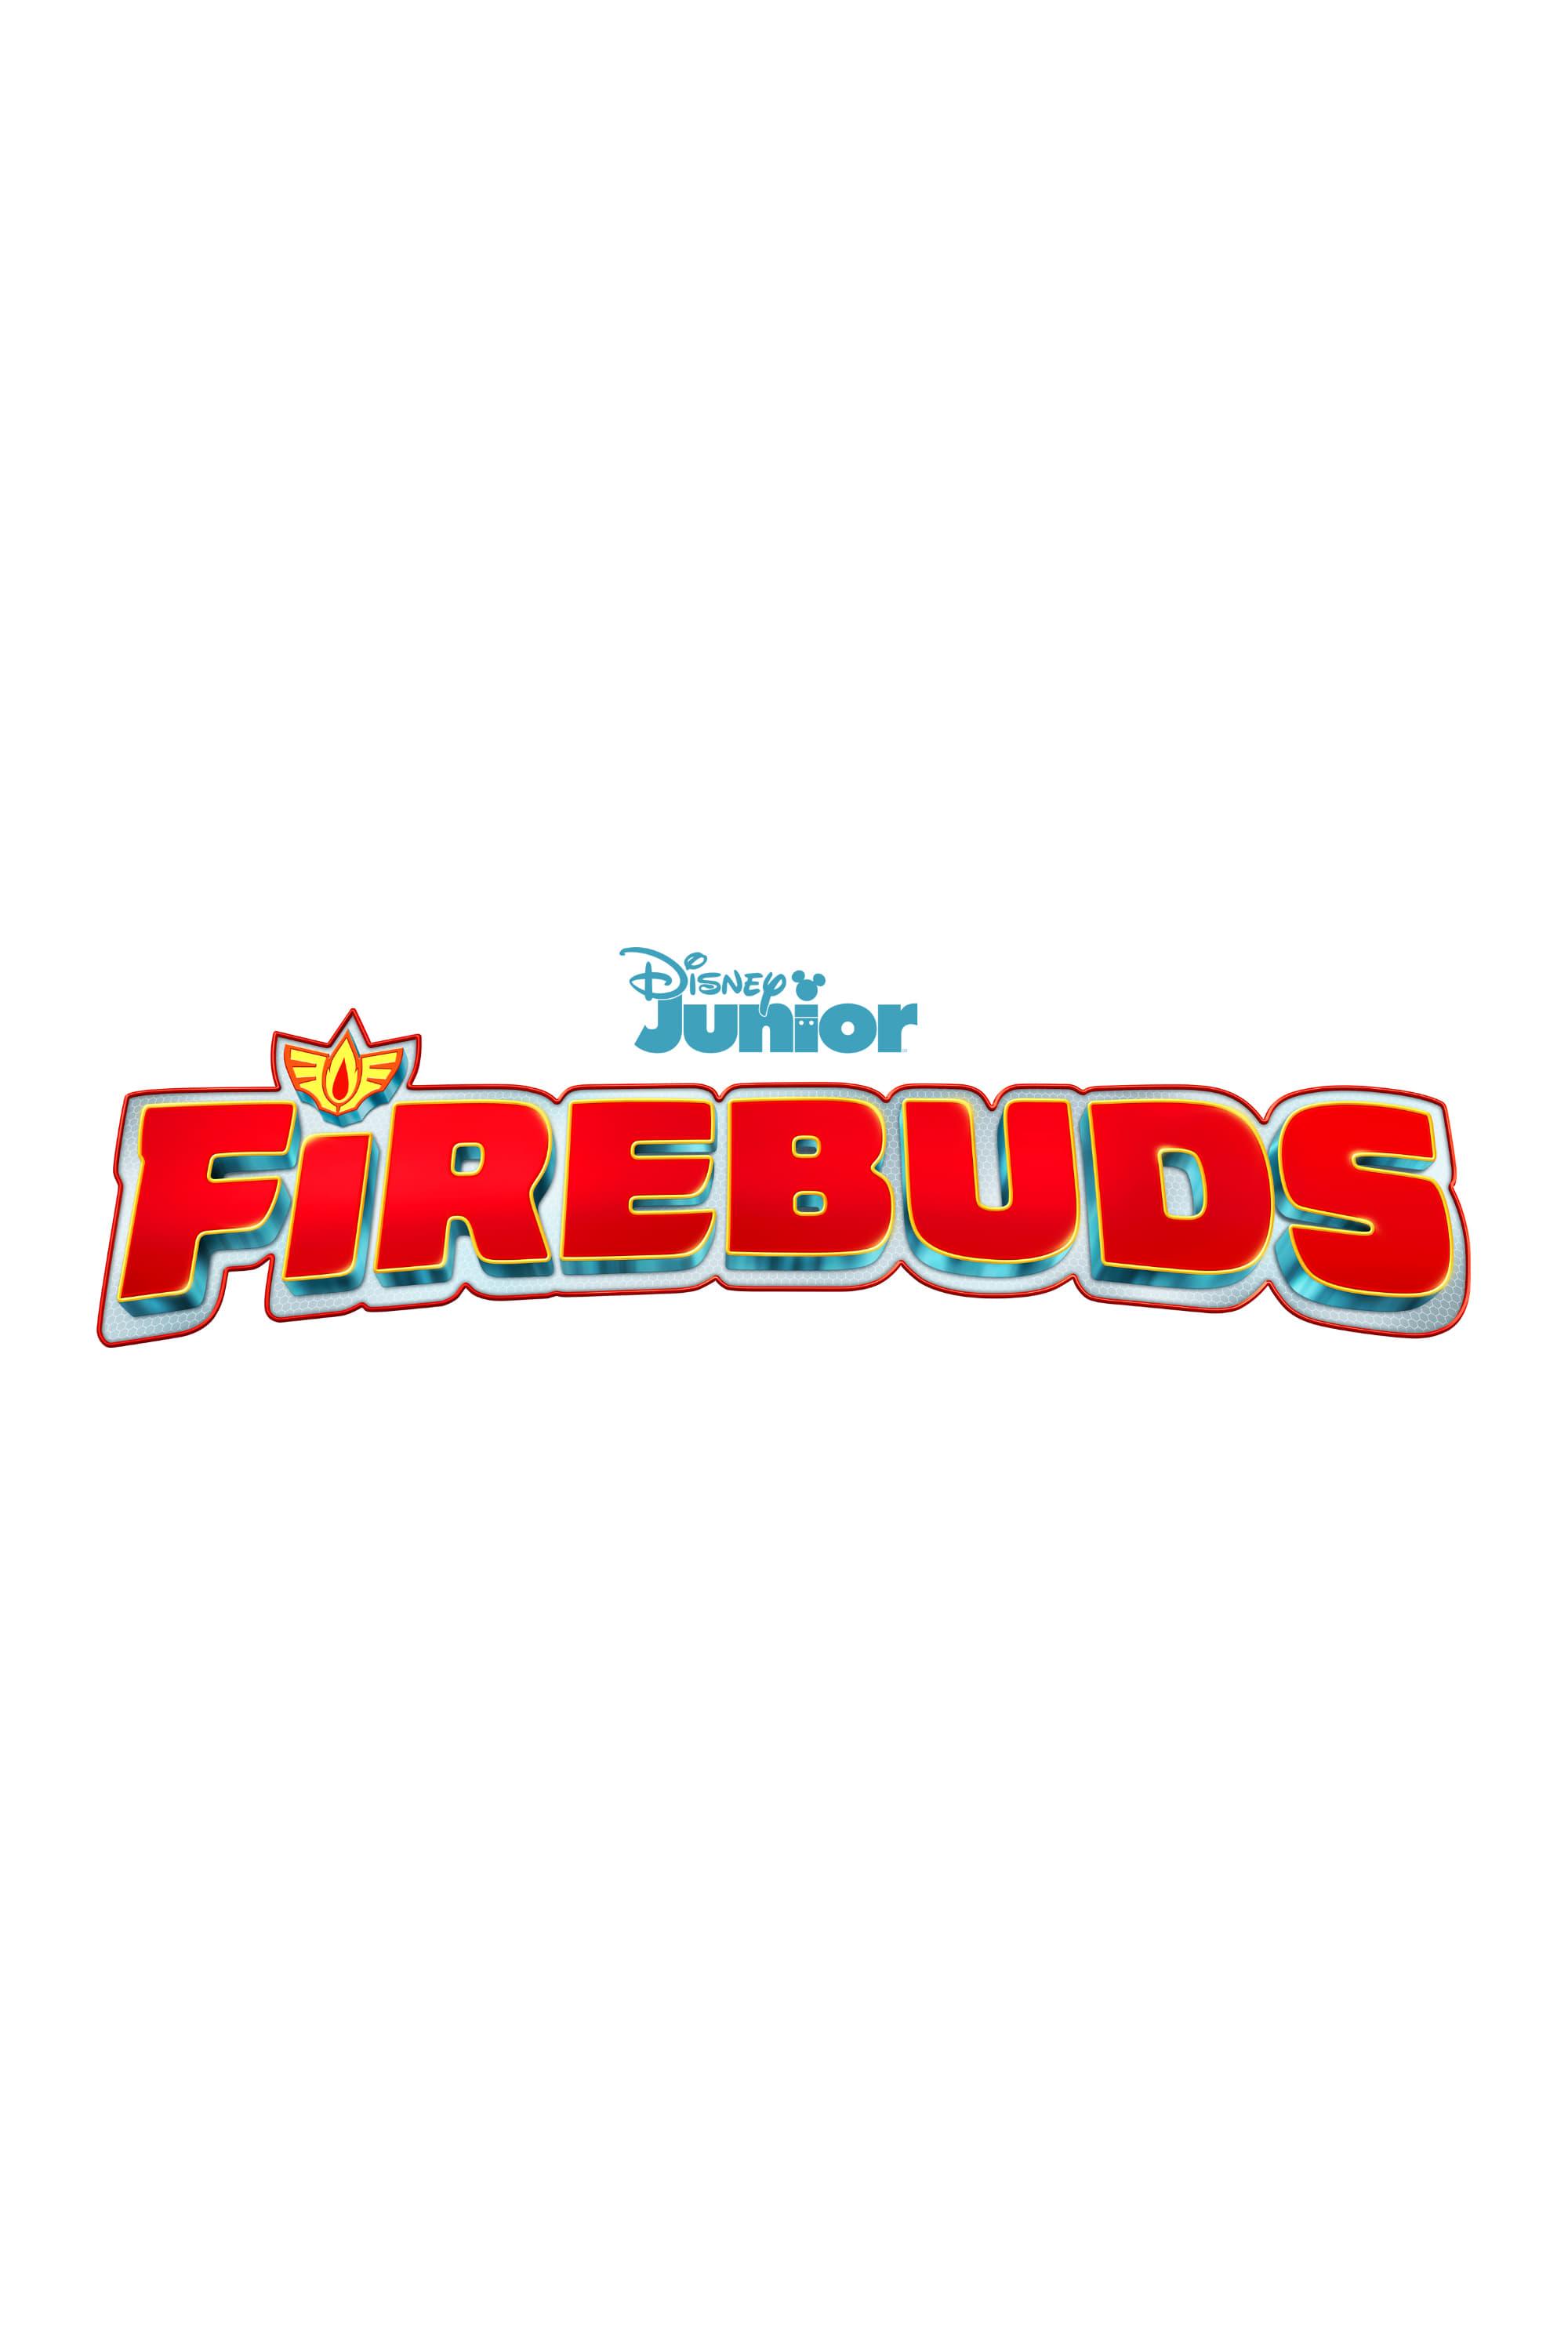 Firebuds poster